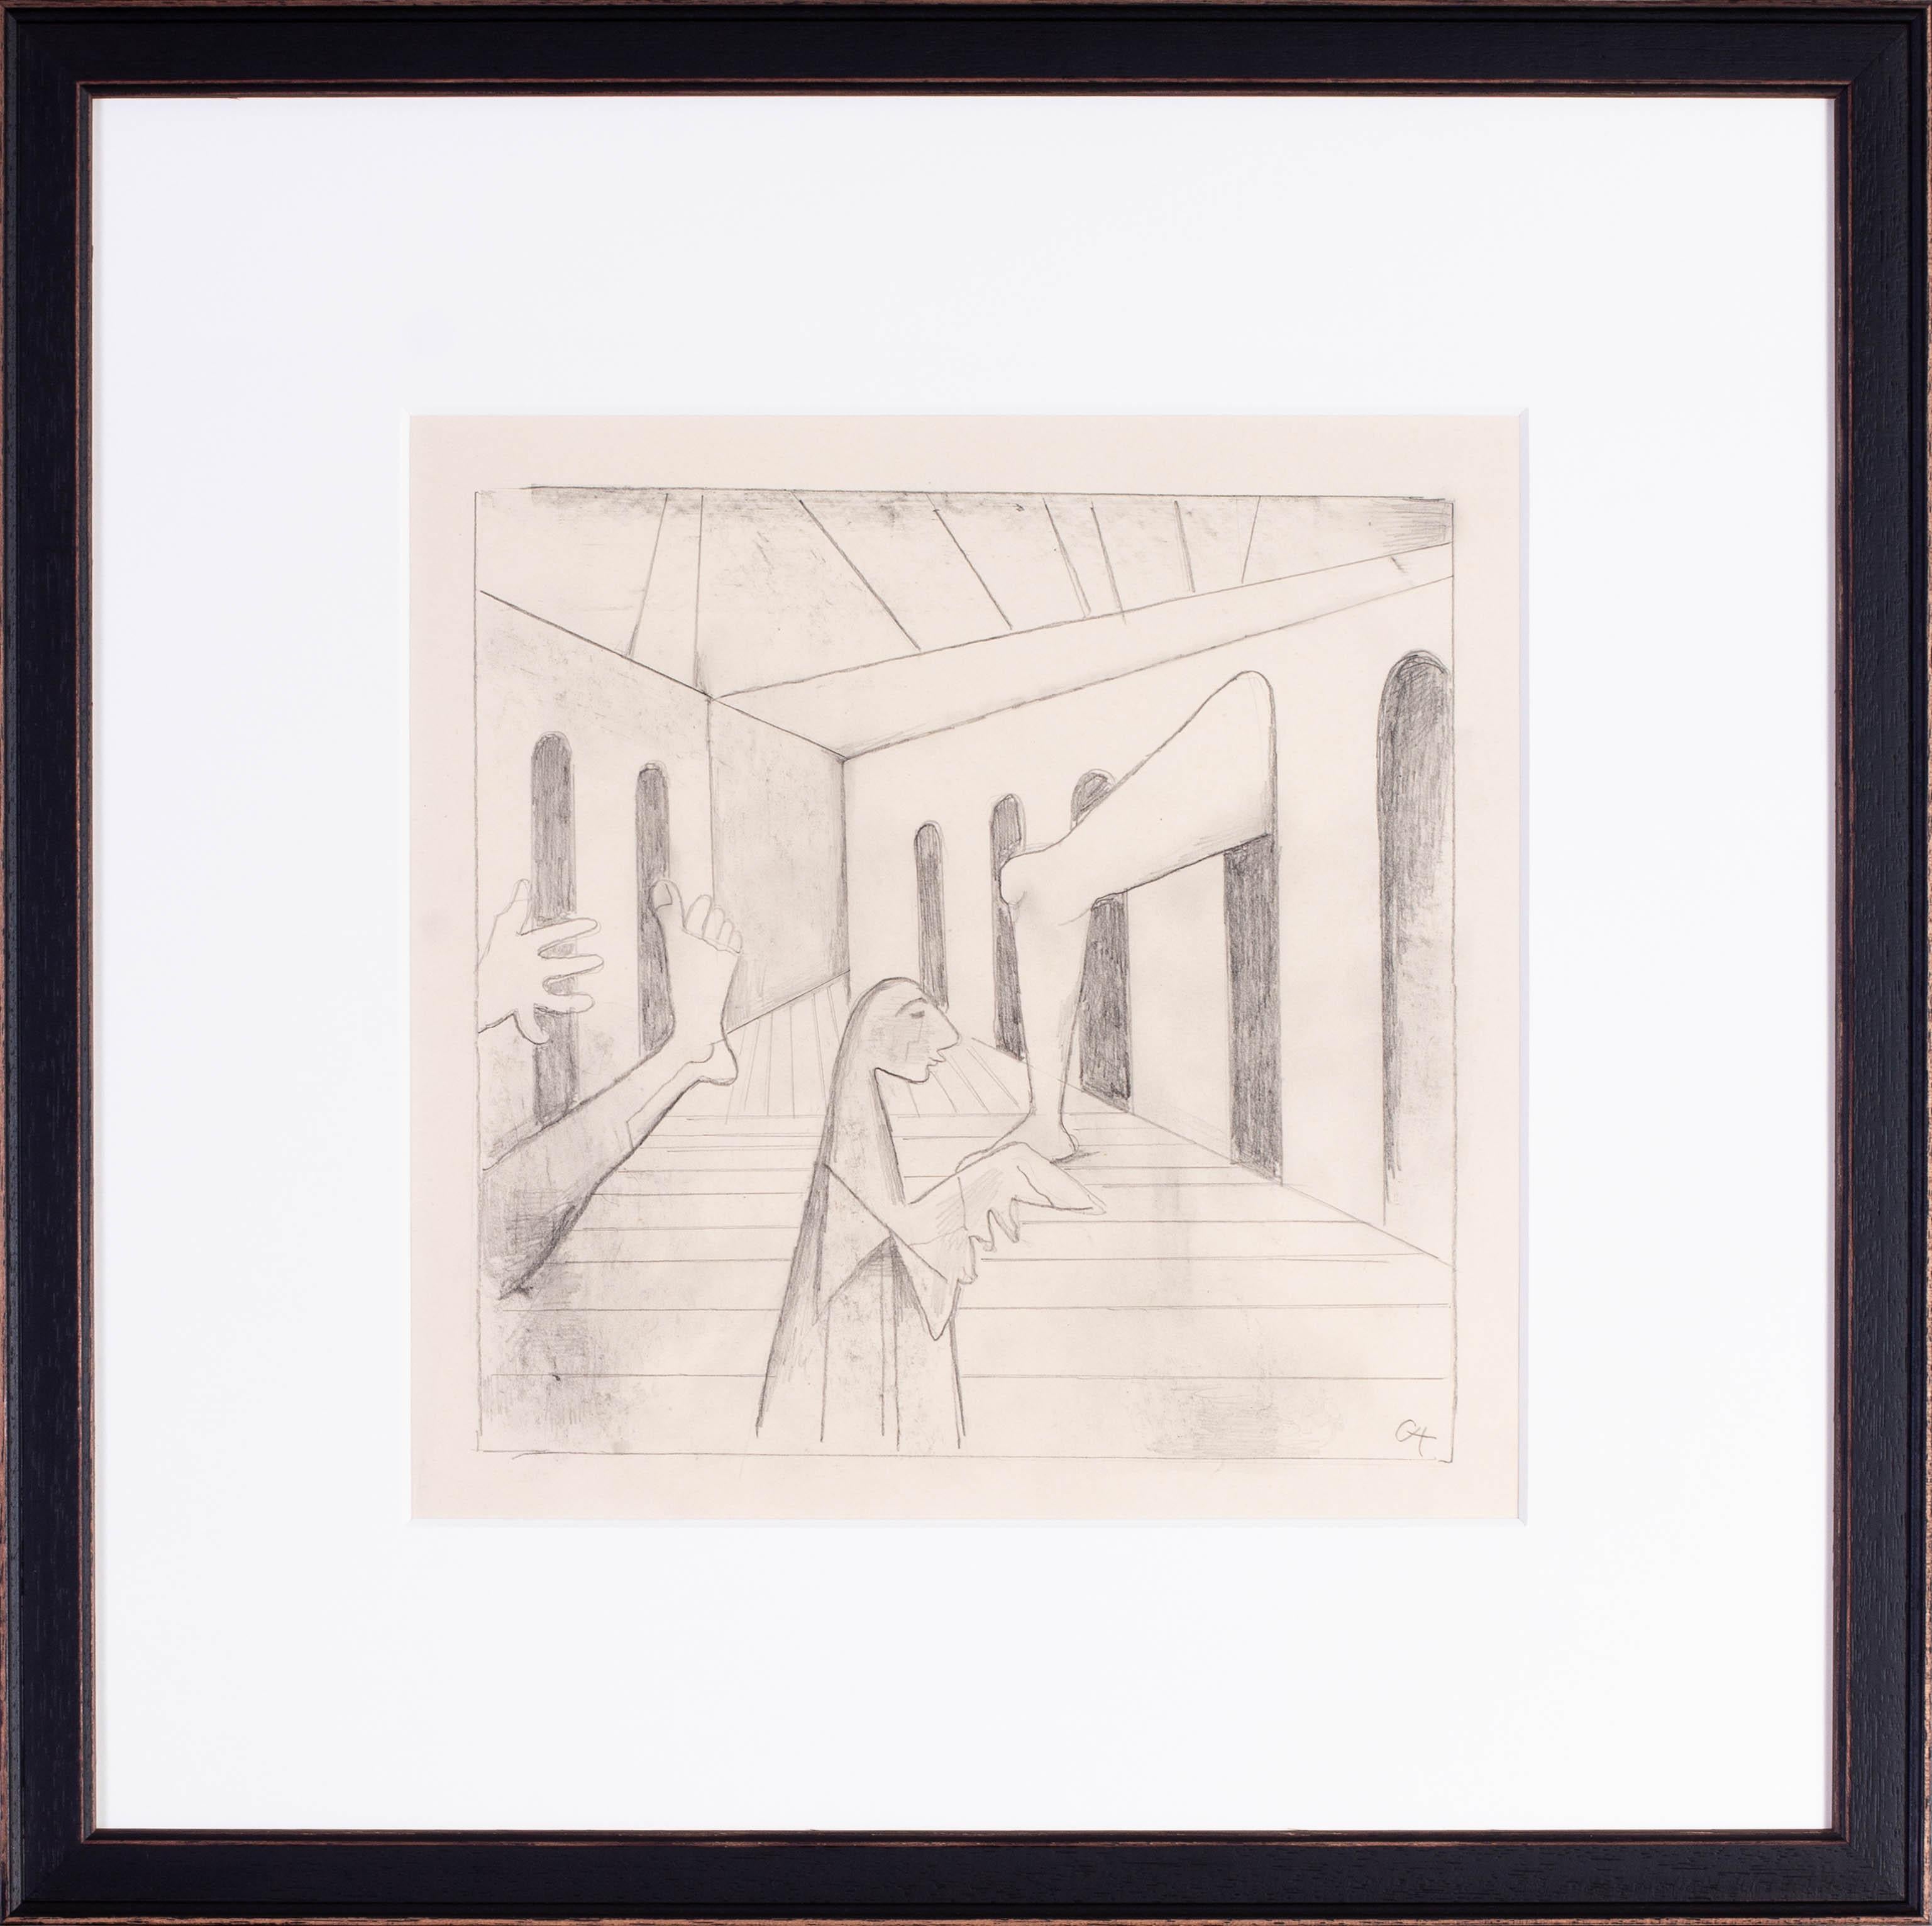 Carl Hofer (allemand, 1875 - 1955) 
Der Traum (Le rêve)
crayon sur papier
Signé avec le monogramme "CH" (en bas à droite) 
13 x 13 in. (33 x 33 cm.) 

Provenance : Ces œuvres proviennent de la seconde épouse de l'artiste, Elizabeth, puis par